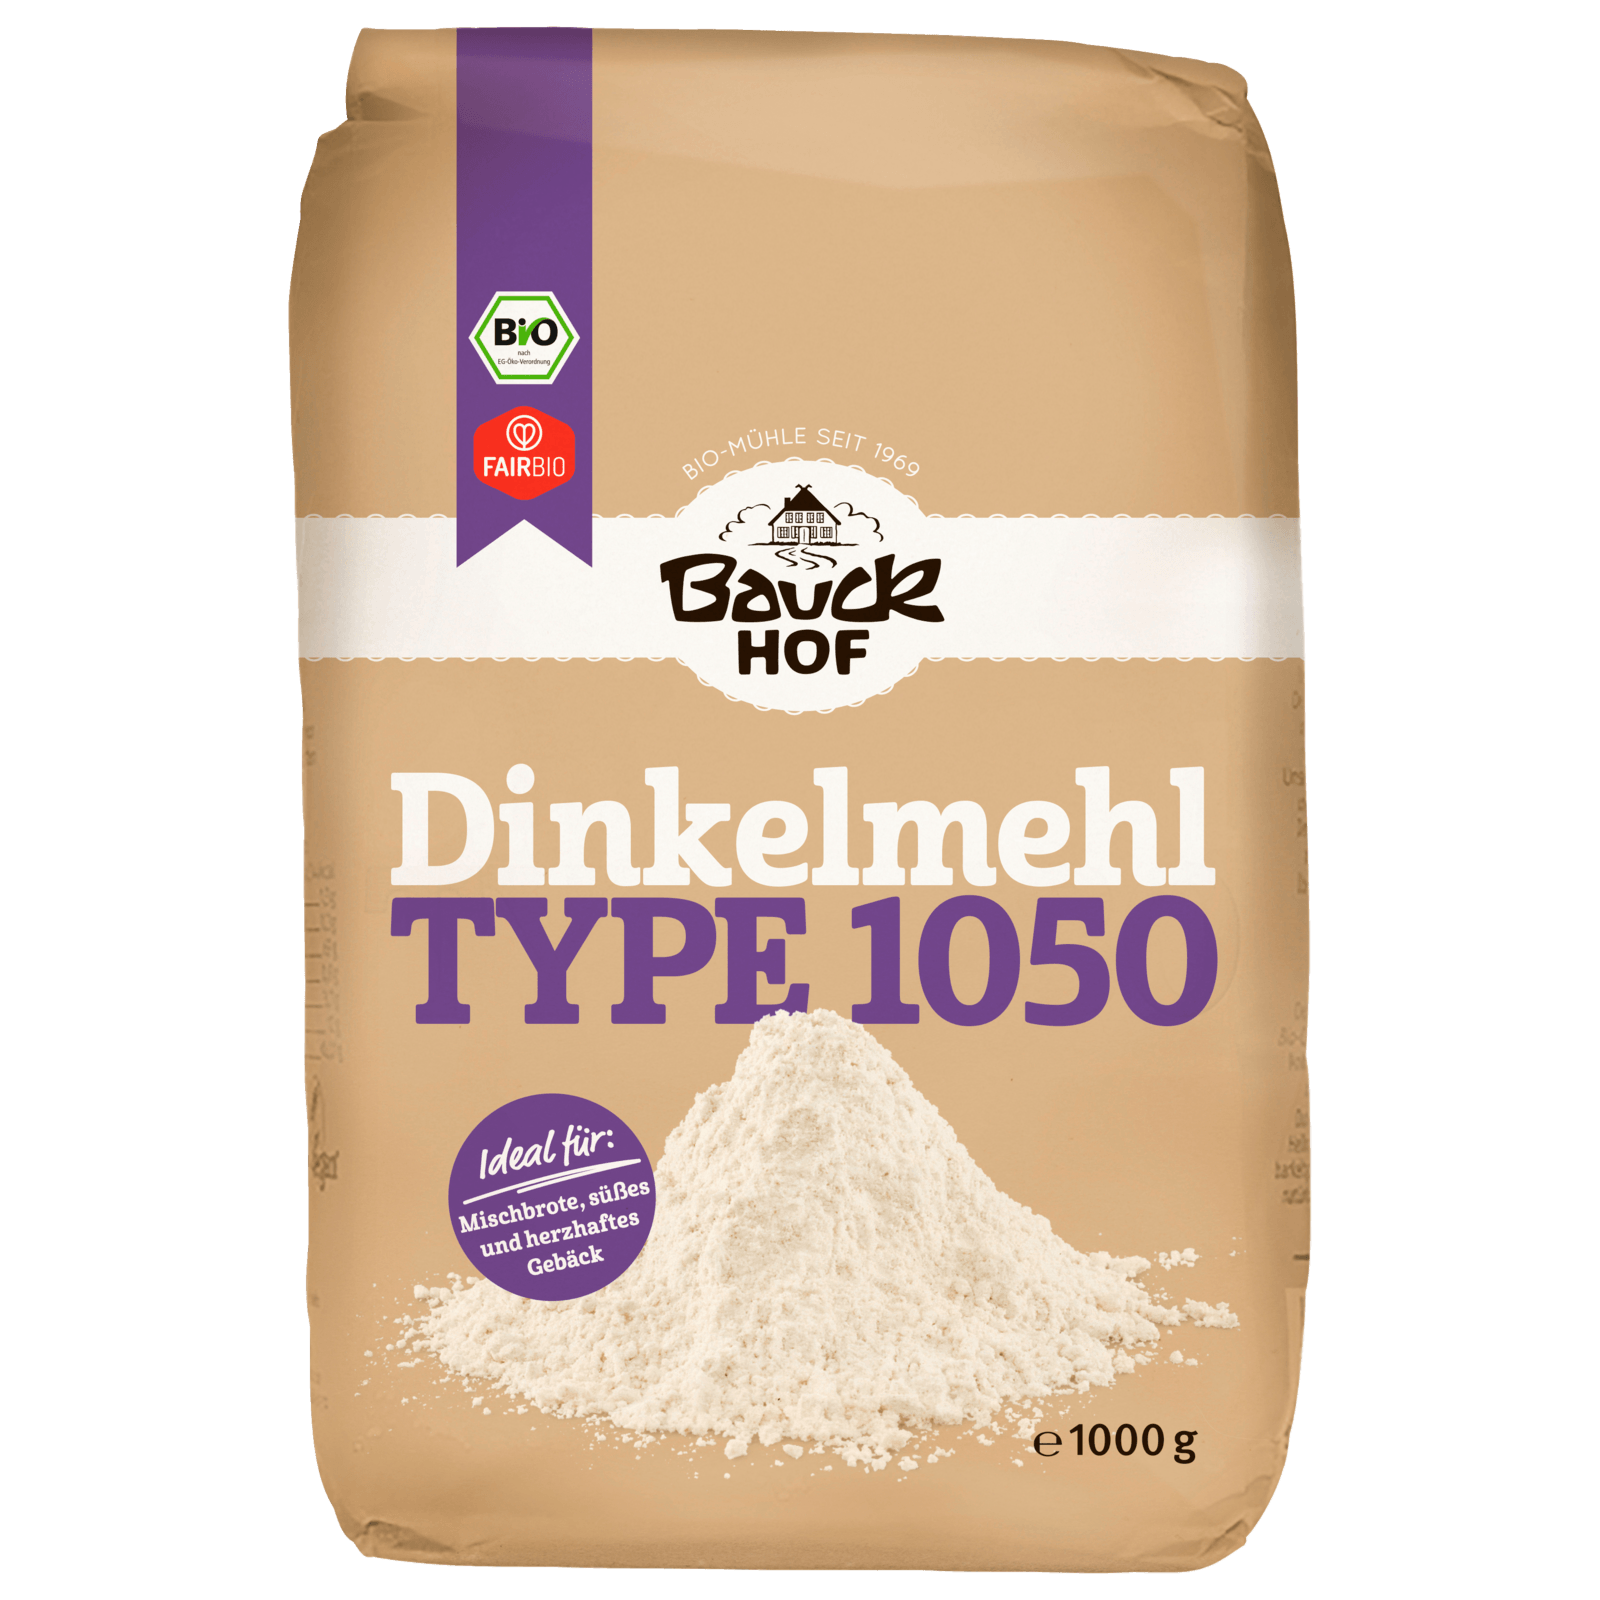 Bauckhof Bio Dinkelmehl Type 1050 1kg